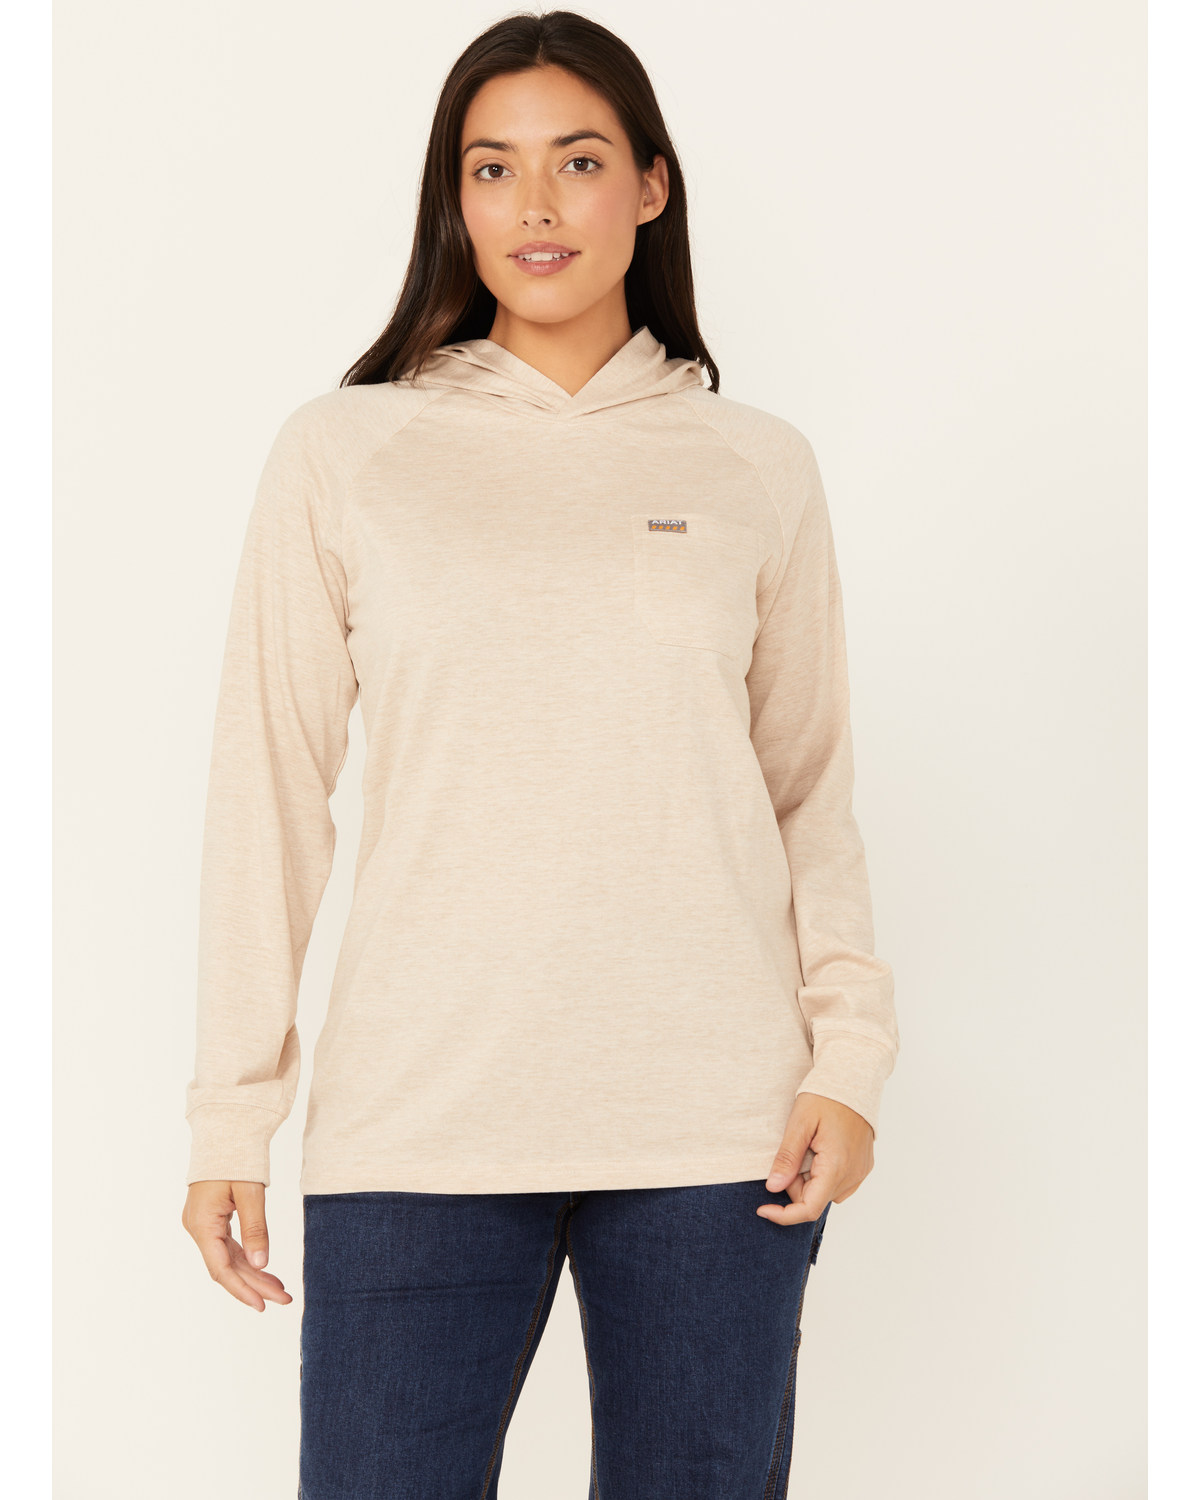 Ariat Women's Rebar Contrast Hooded Long Sleeve Work T-Shirt